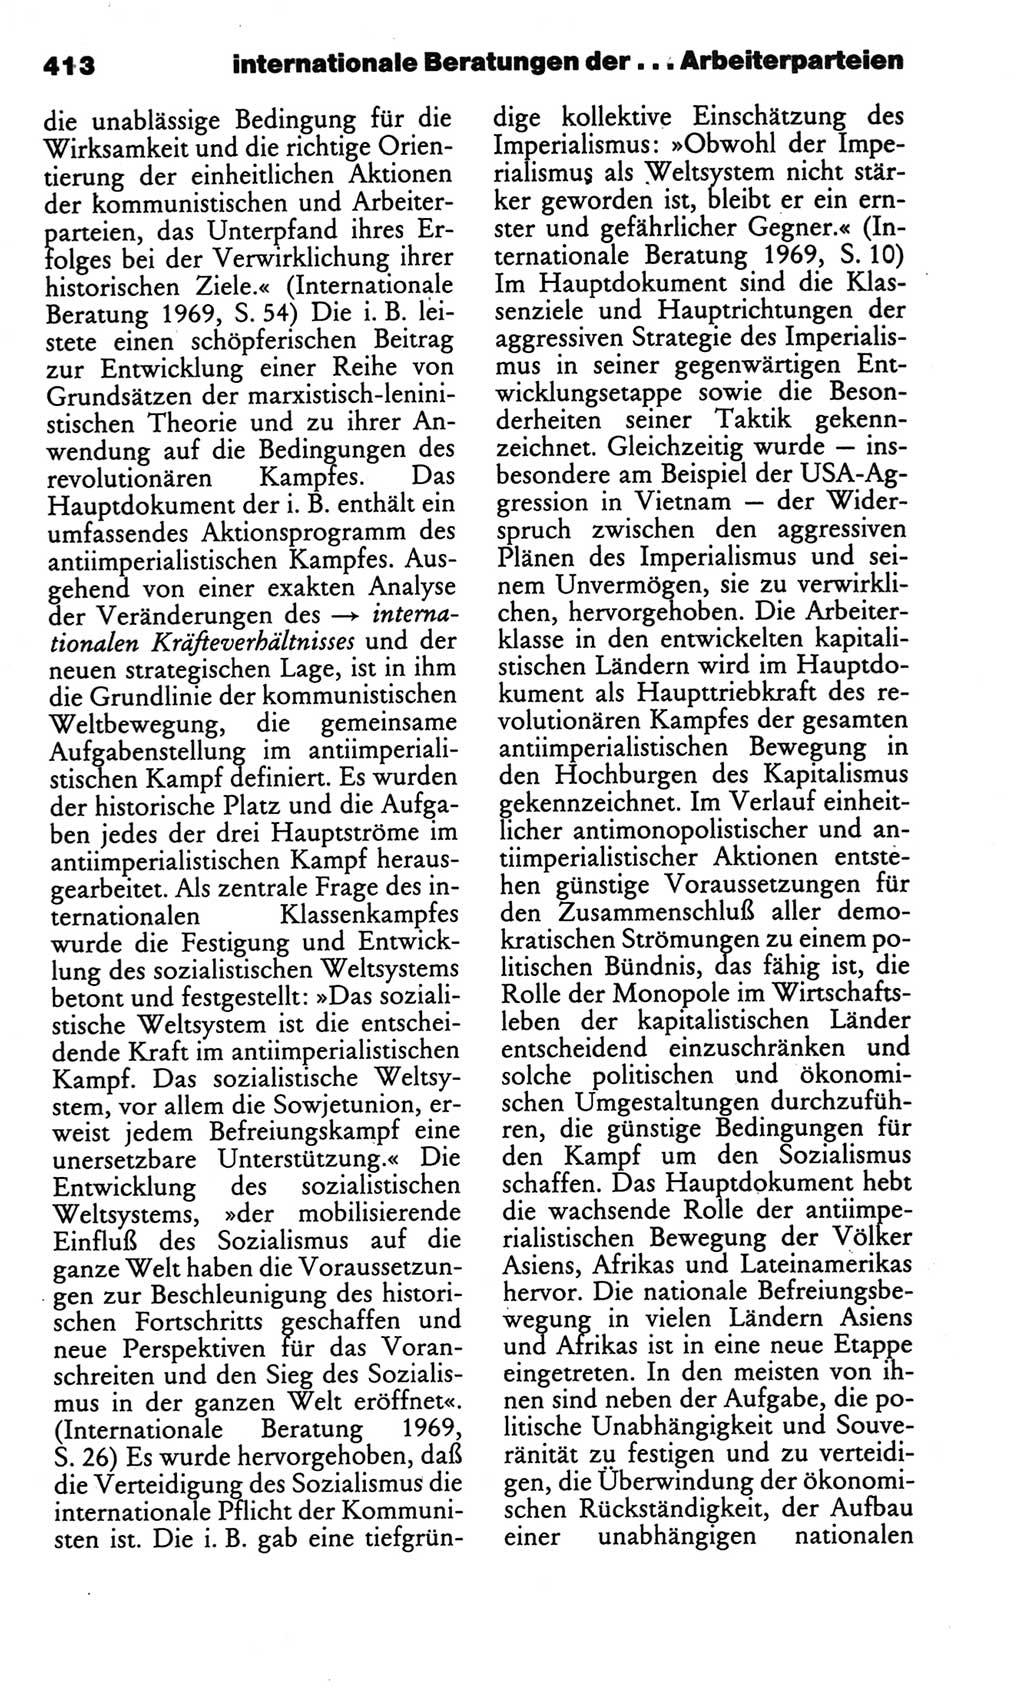 Kleines politisches Wörterbuch [Deutsche Demokratische Republik (DDR)] 1986, Seite 413 (Kl. pol. Wb. DDR 1986, S. 413)